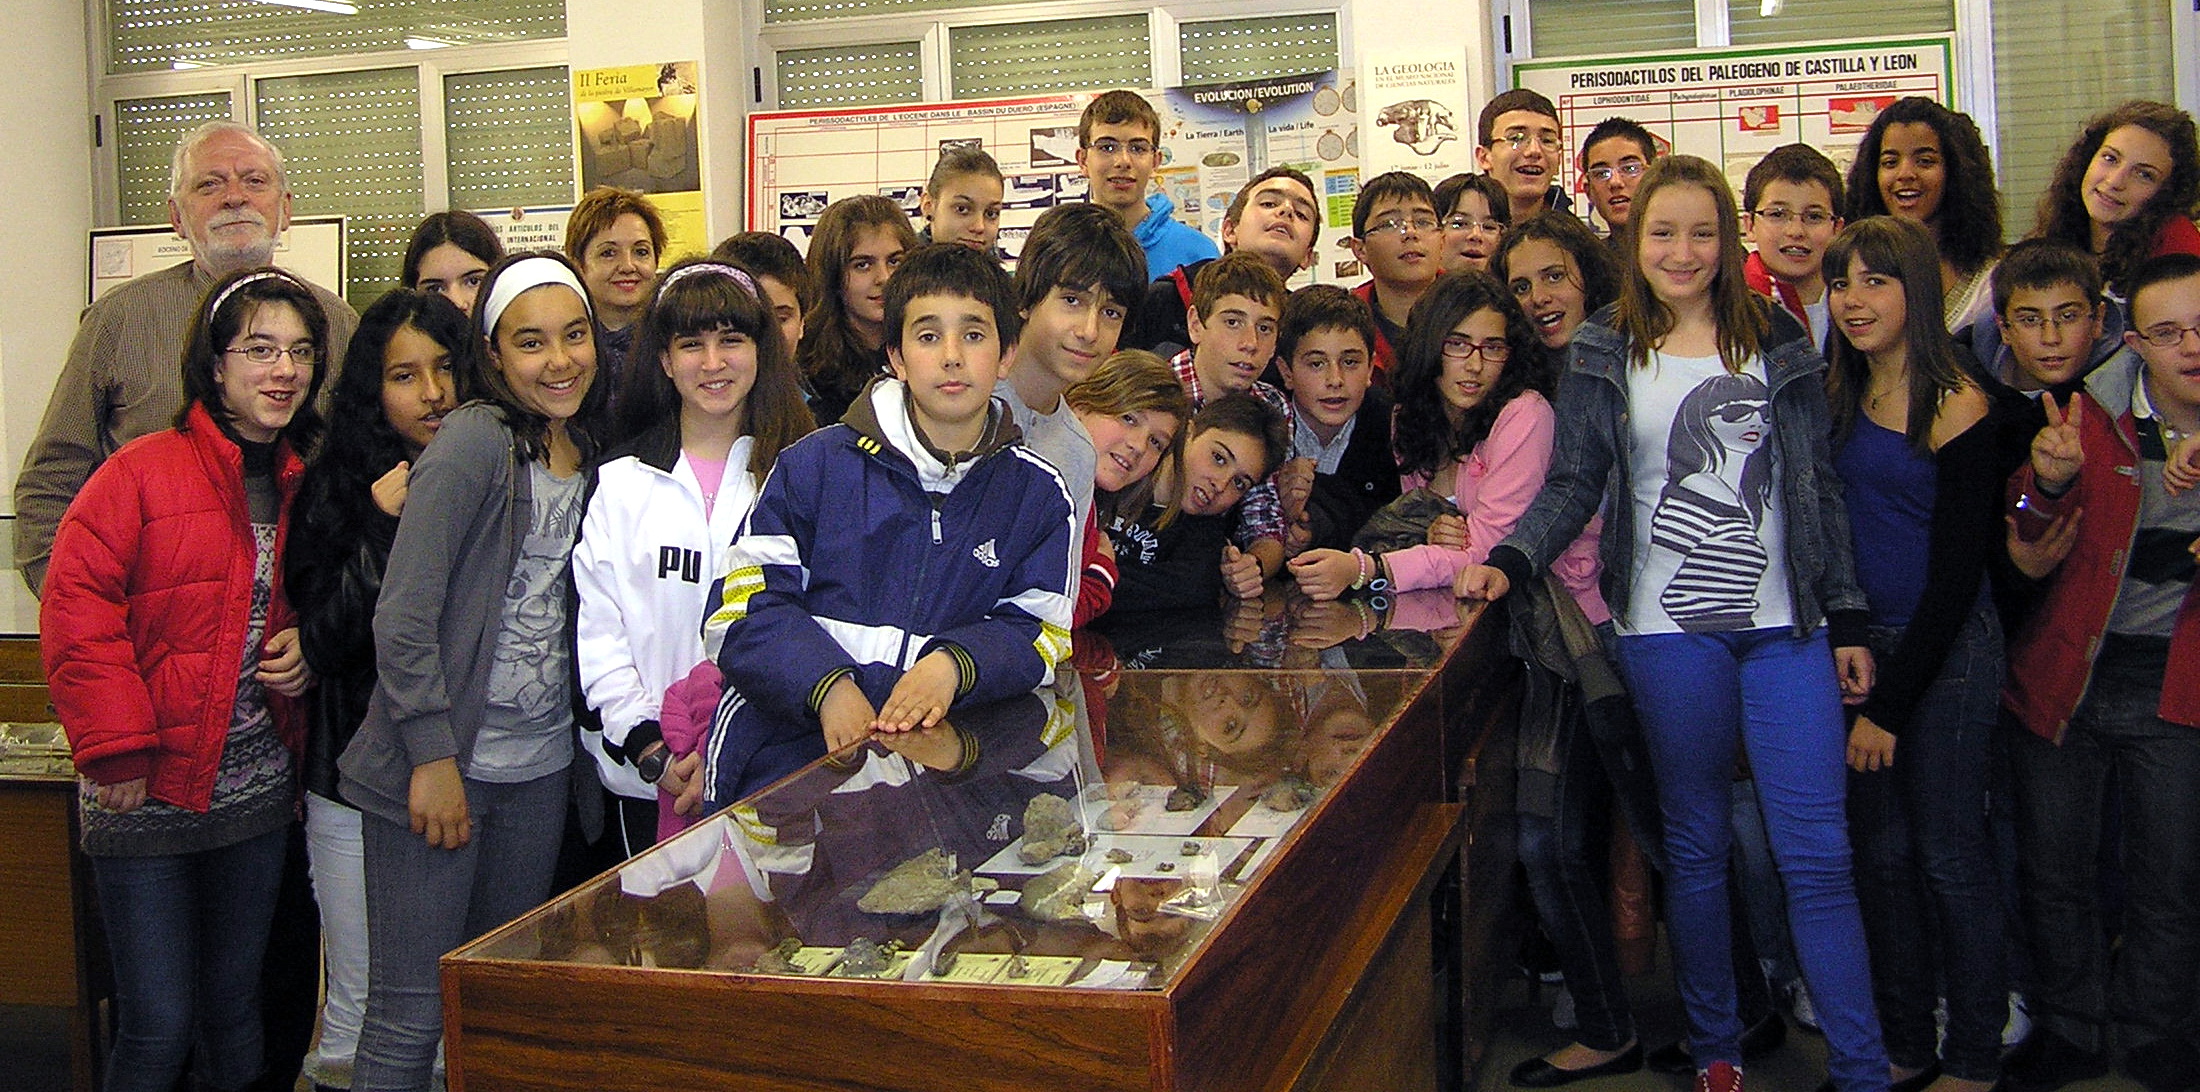 Concluido el ciclo de visitas a la Sala de las Tortugas de la Universidad con los colegios salmantinos La Milagrosa y Virgen de la Vega